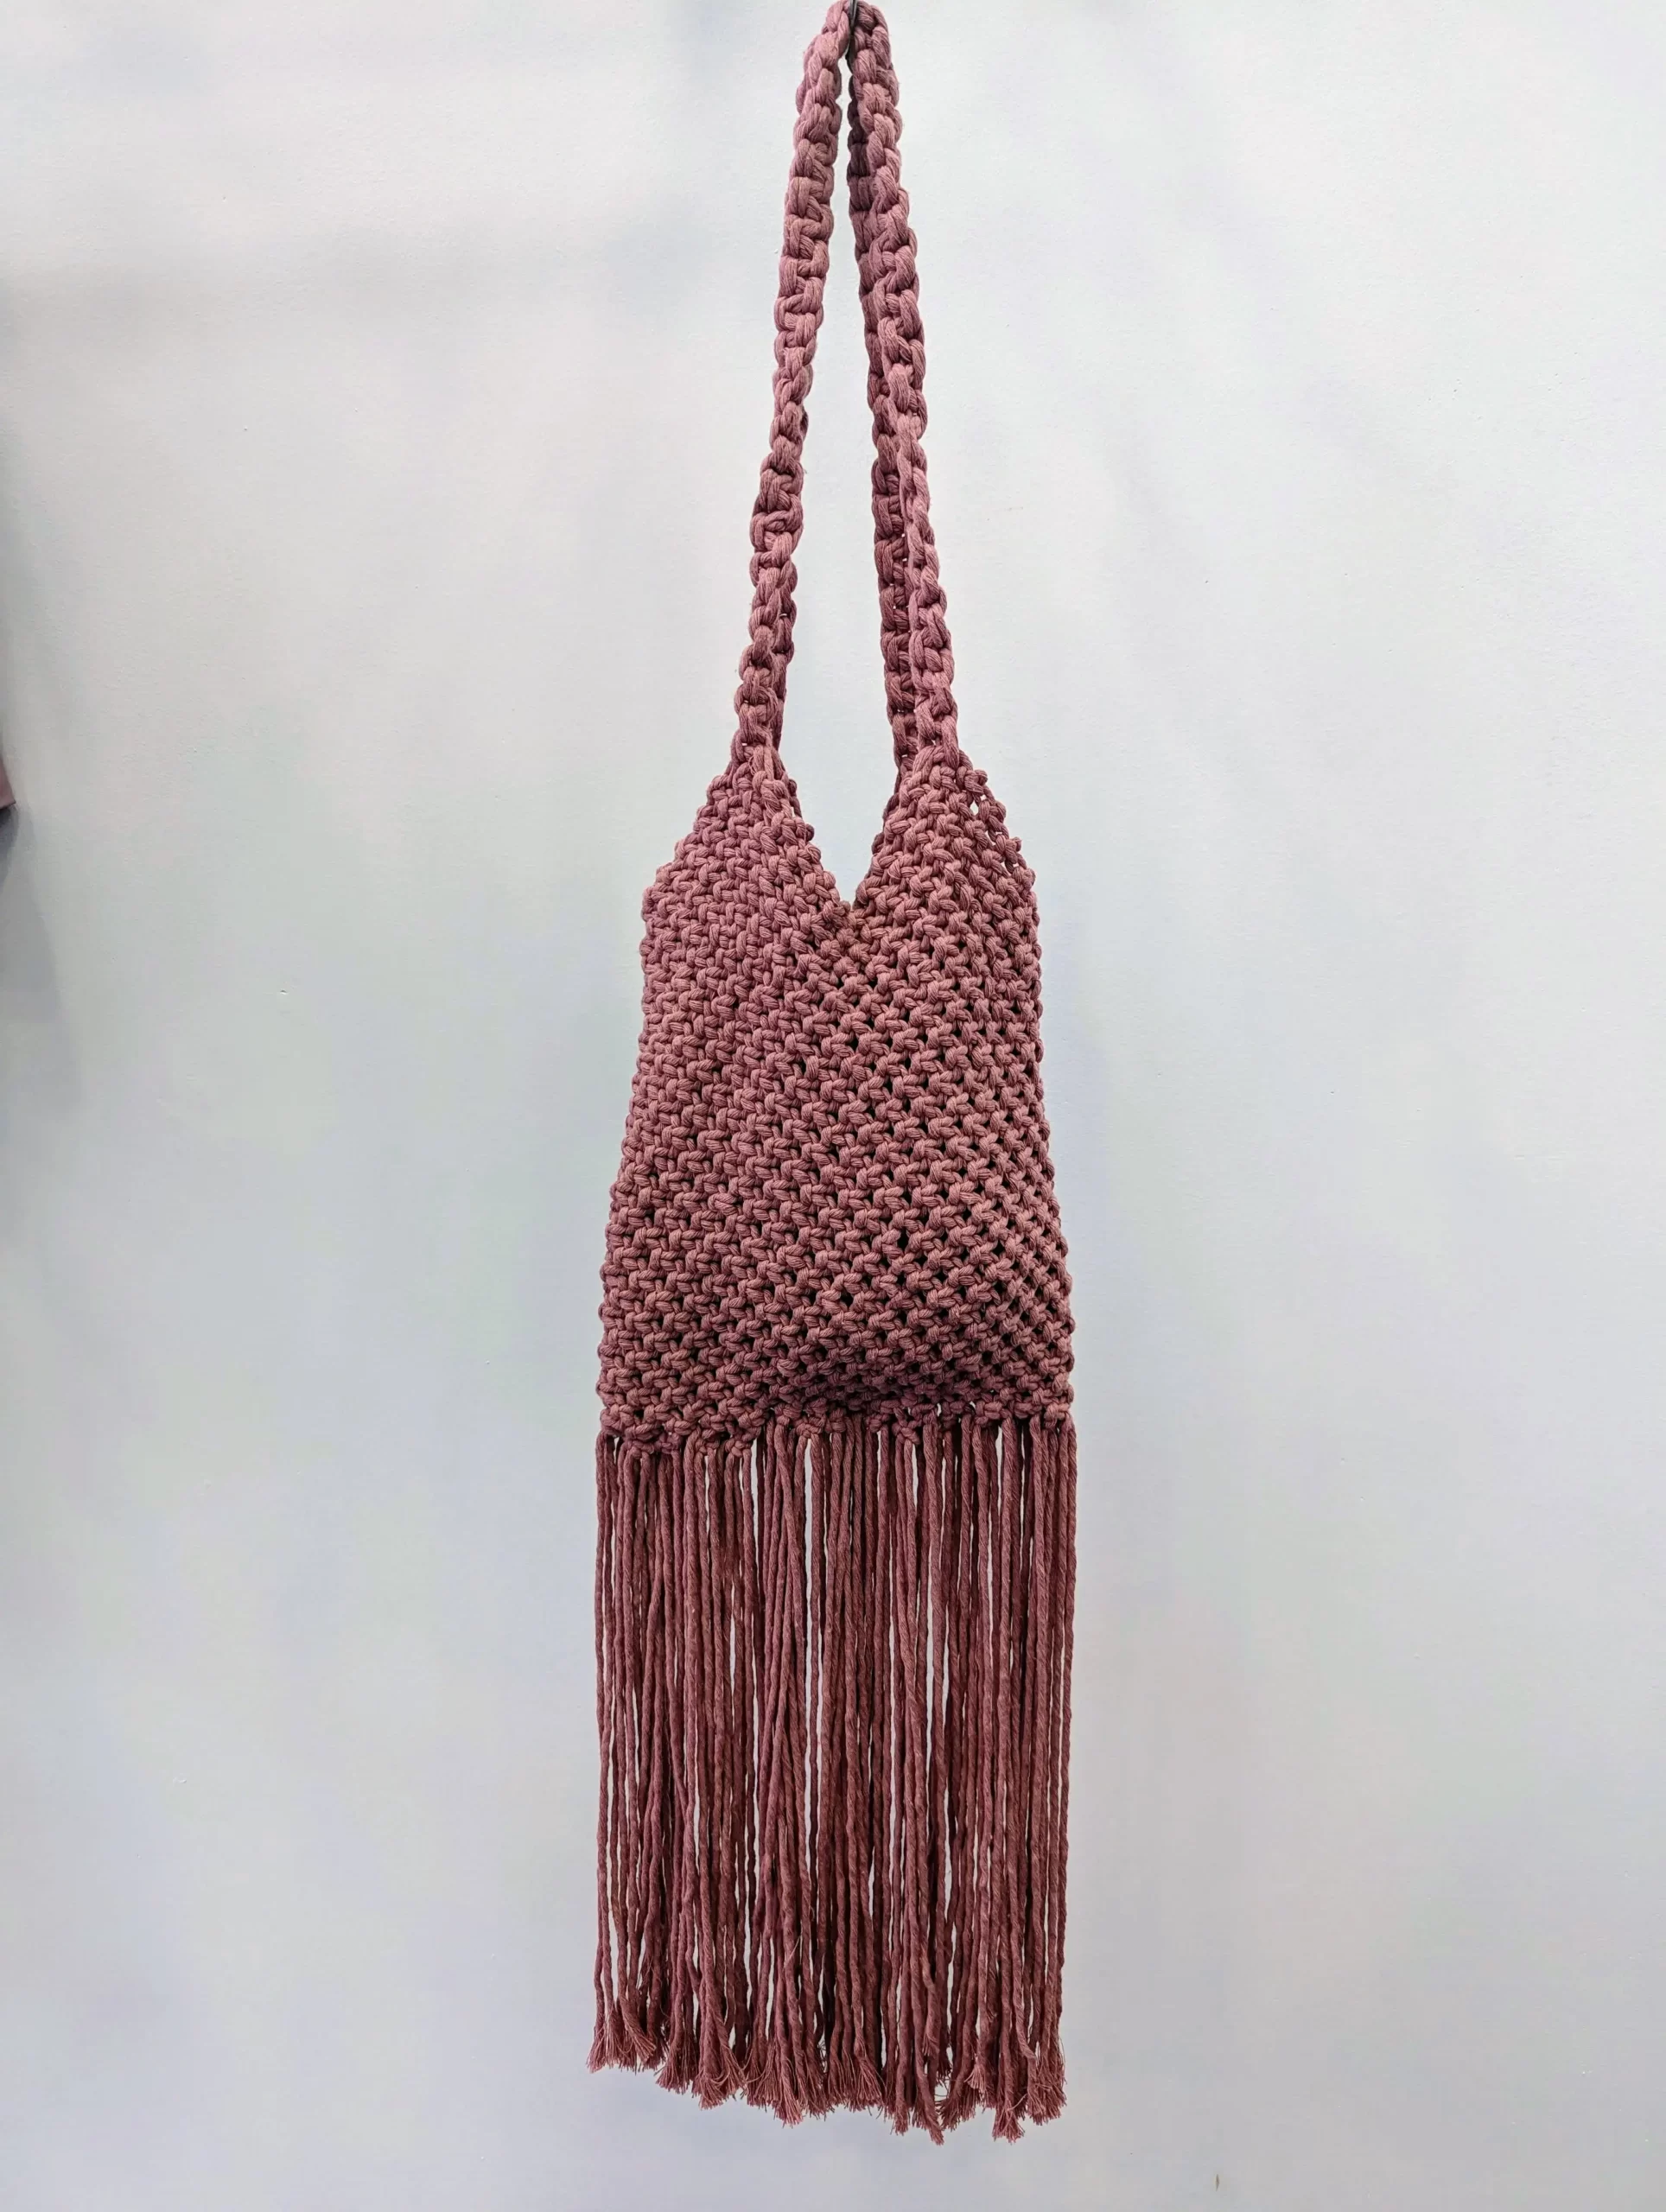 Macrame Handbag With Natural Wooden Handles Macrame Clutch Drawstring  Cotton Liner Boho Inspired Fashion Unique Gift Idea - Etsy | Macramé,  Bolsos en macrame, Bolso